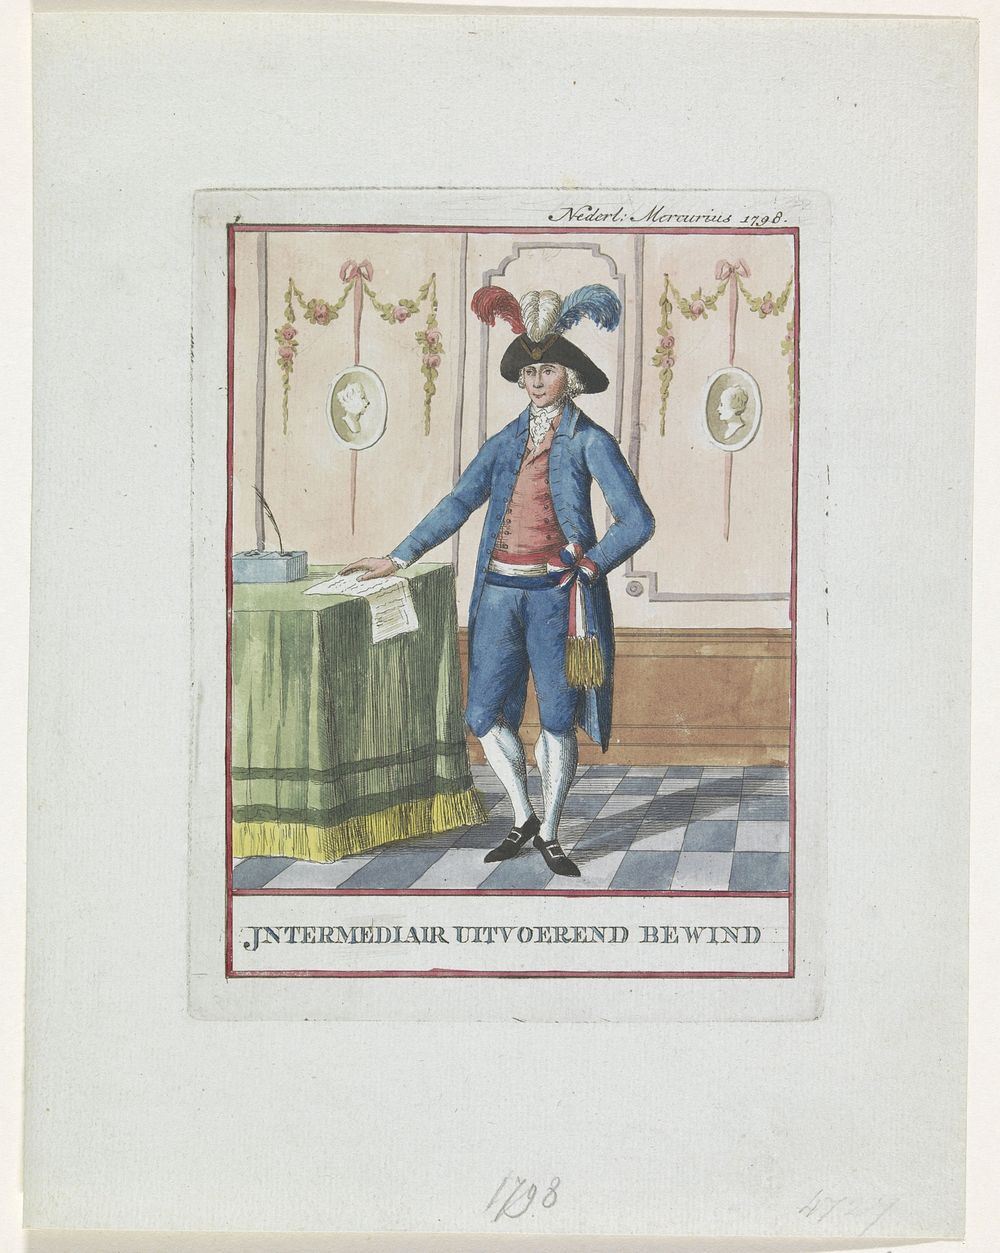 Officiële klederdracht van een lid van het Intermediair Uitvoerend Bewind, 1798 (1798) by anonymous